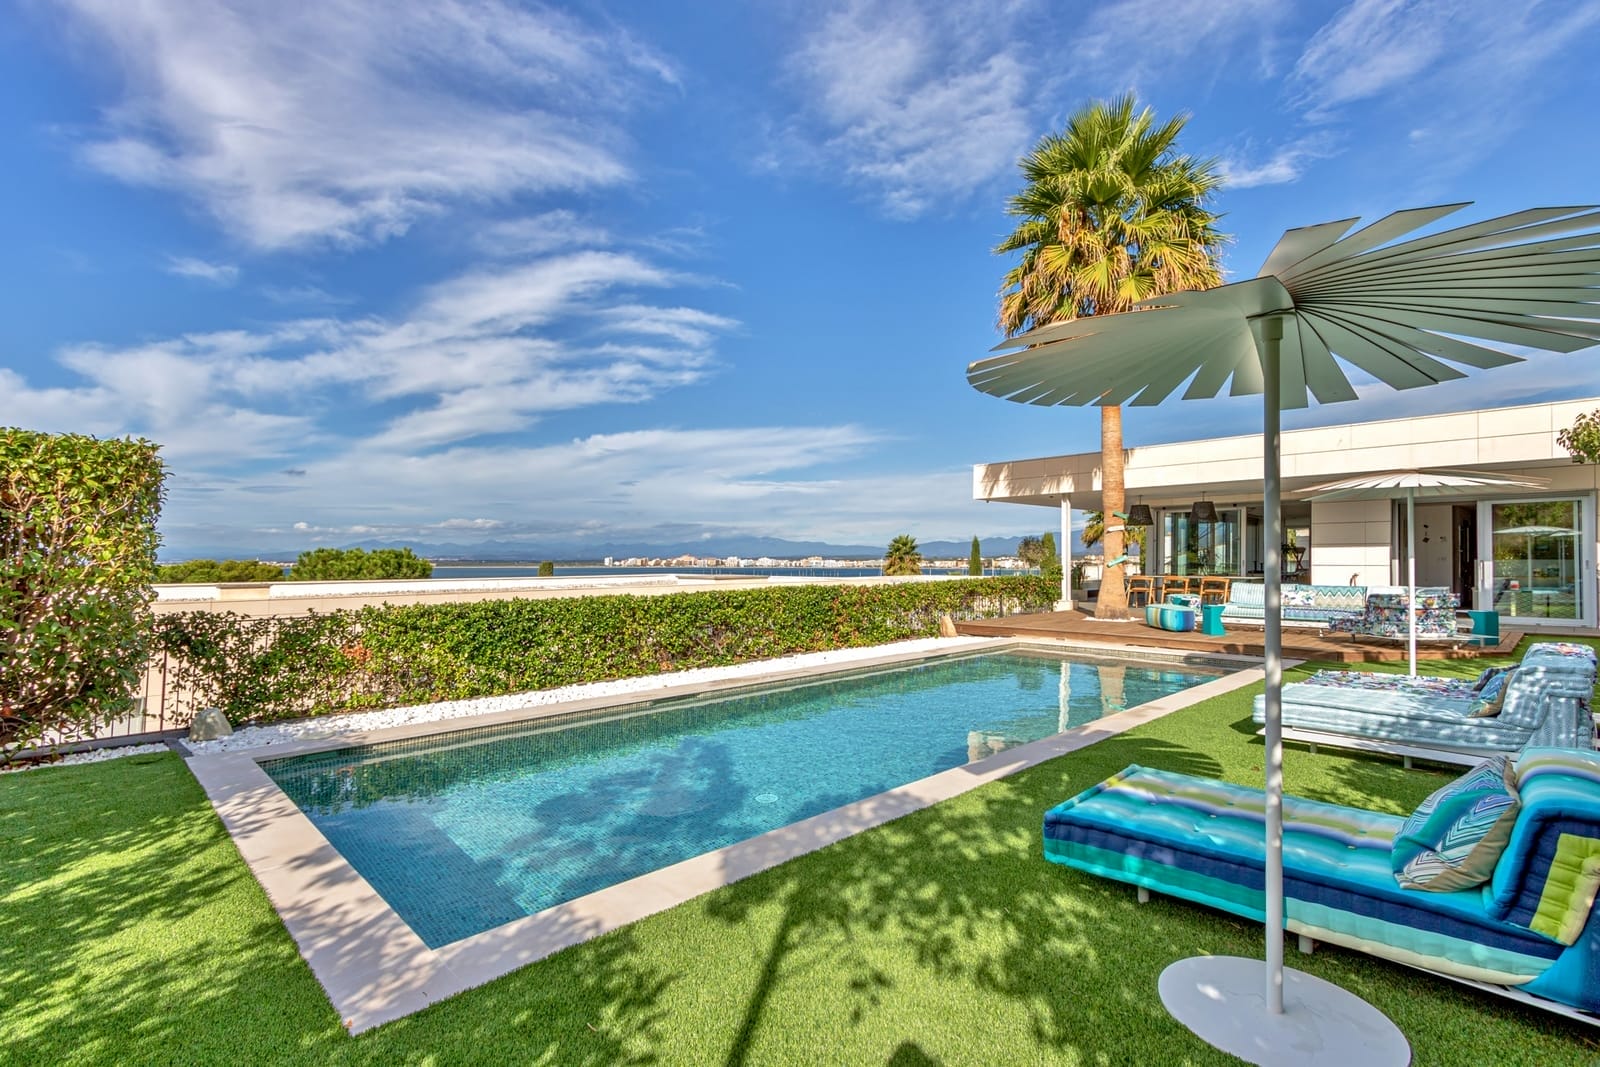 Roses - luxury property sea view, salt water pool, 2 garages, beach 300m